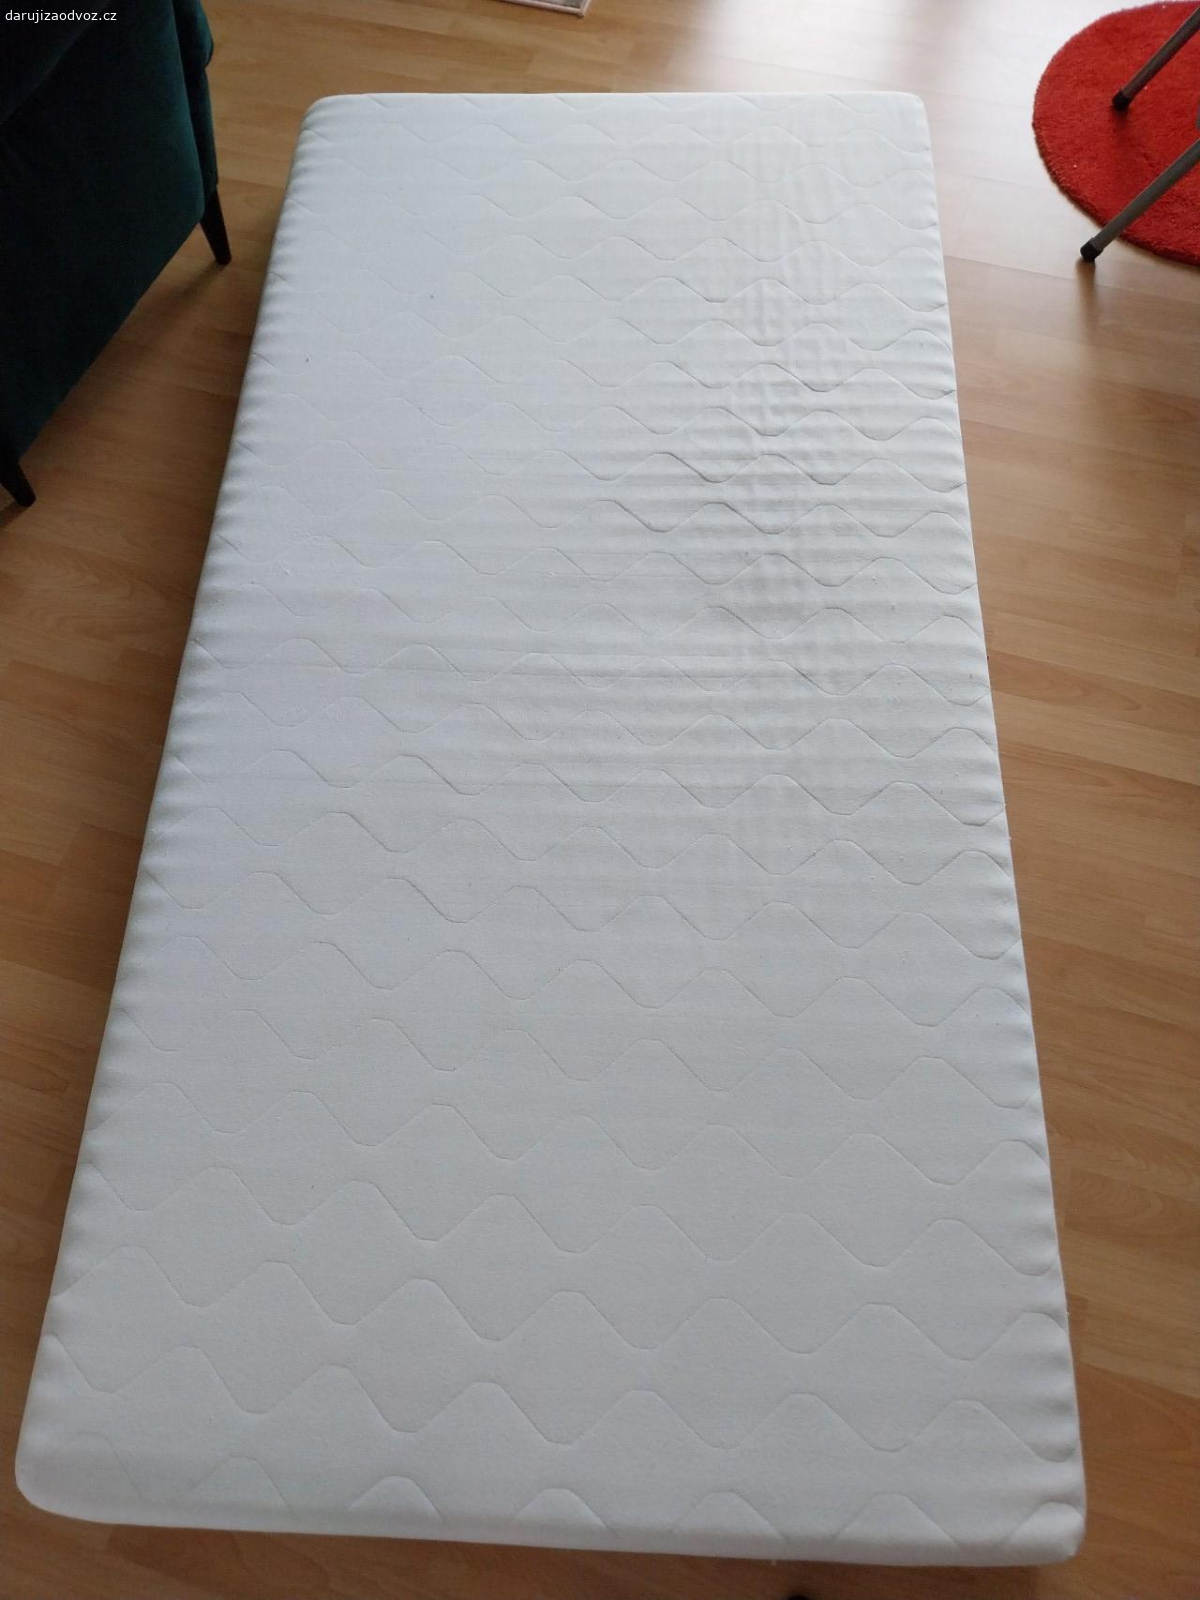 Matrace 100x200 cm. Daruji matraci použita, mírně prolezena, třeba ještě někdo využije pro pejska apod.